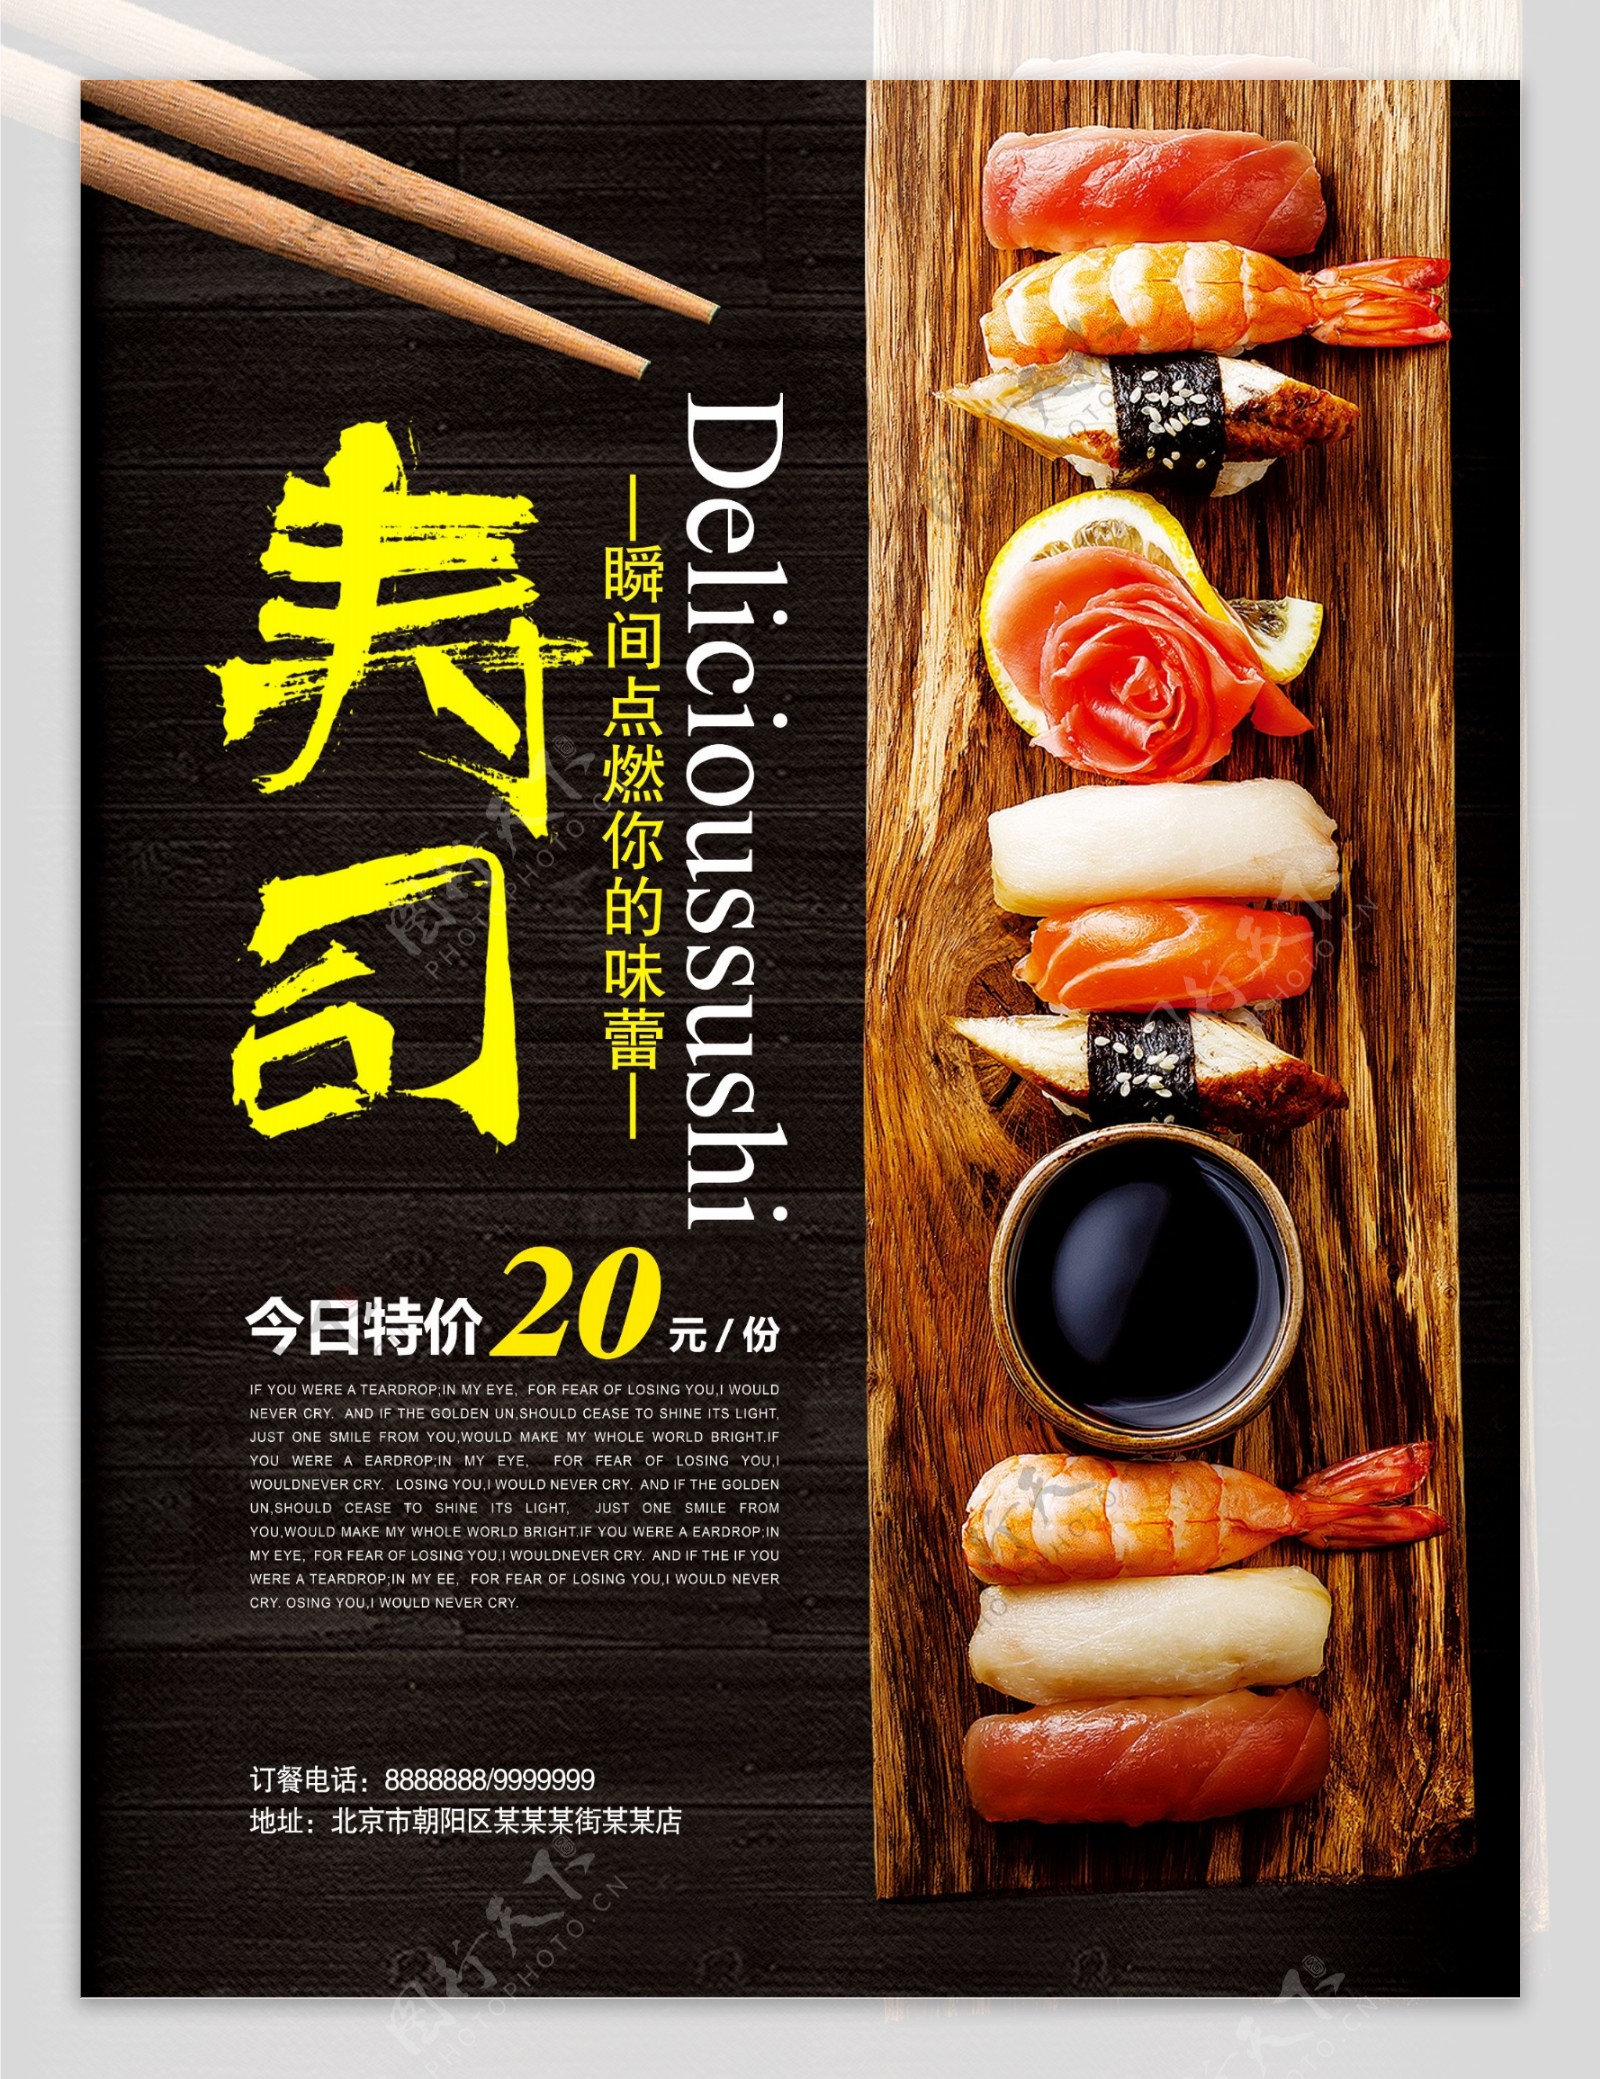 时尚寿司美食海报